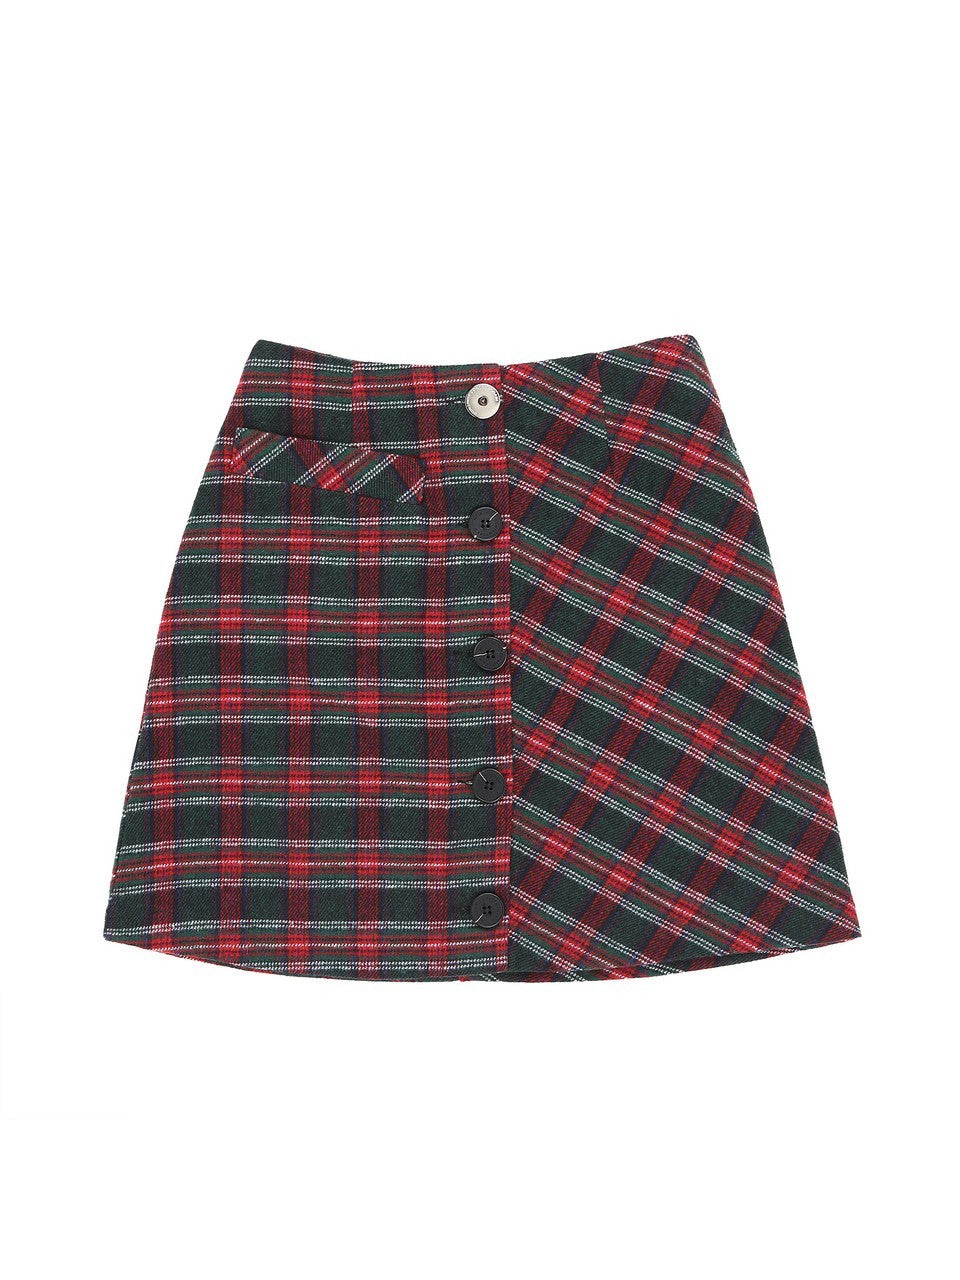 Atom Skirt